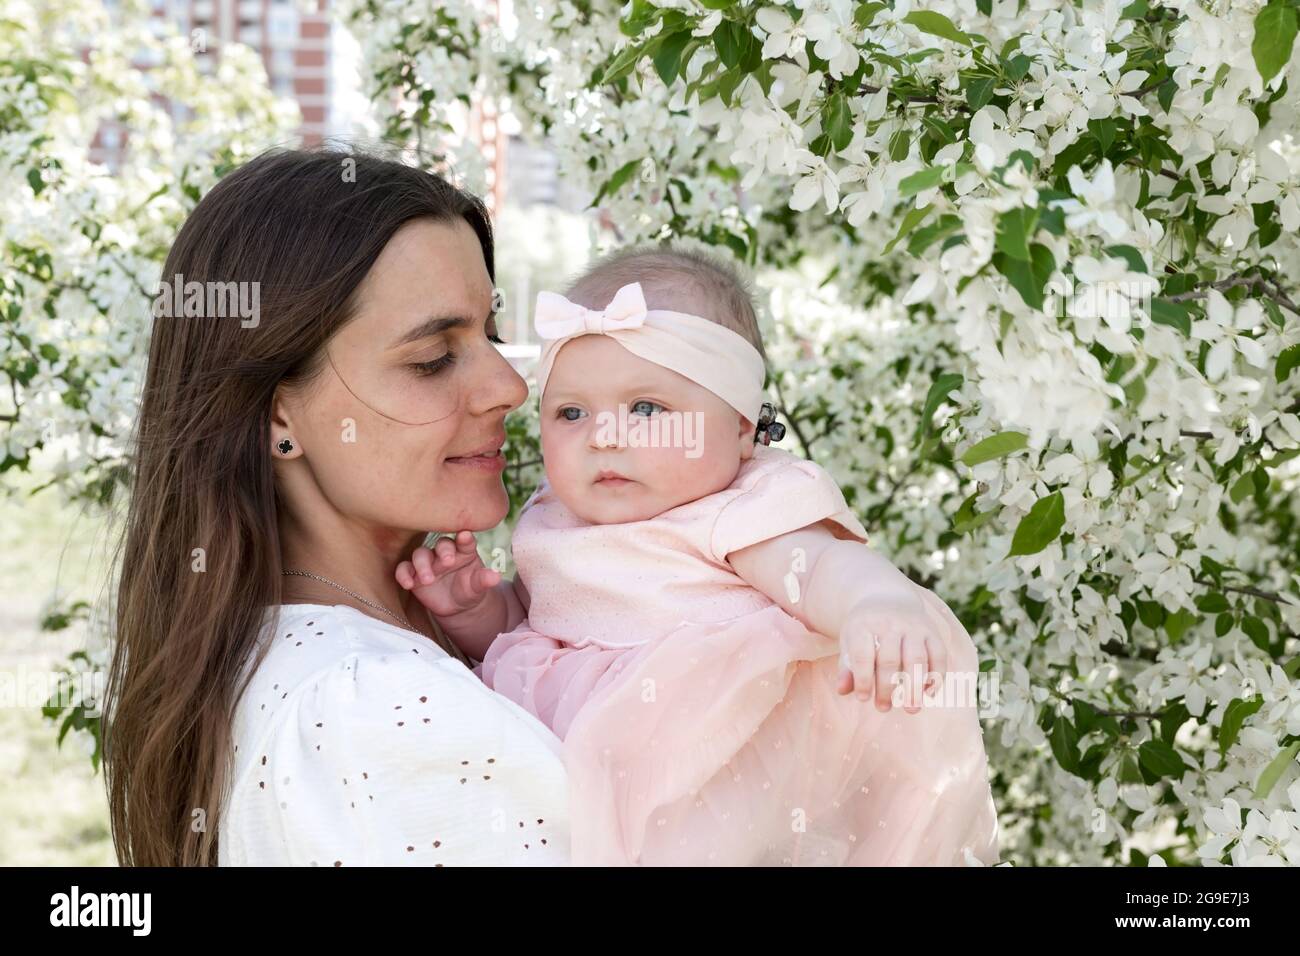 Lächelnde und attraktive Frau mit kleinem Kind. Nettes und kleines Mädchen in rosa Kleid. Schöne und hübsche Mutter in weißen Kleidern. Horizontale Aufnahme. Stockfoto